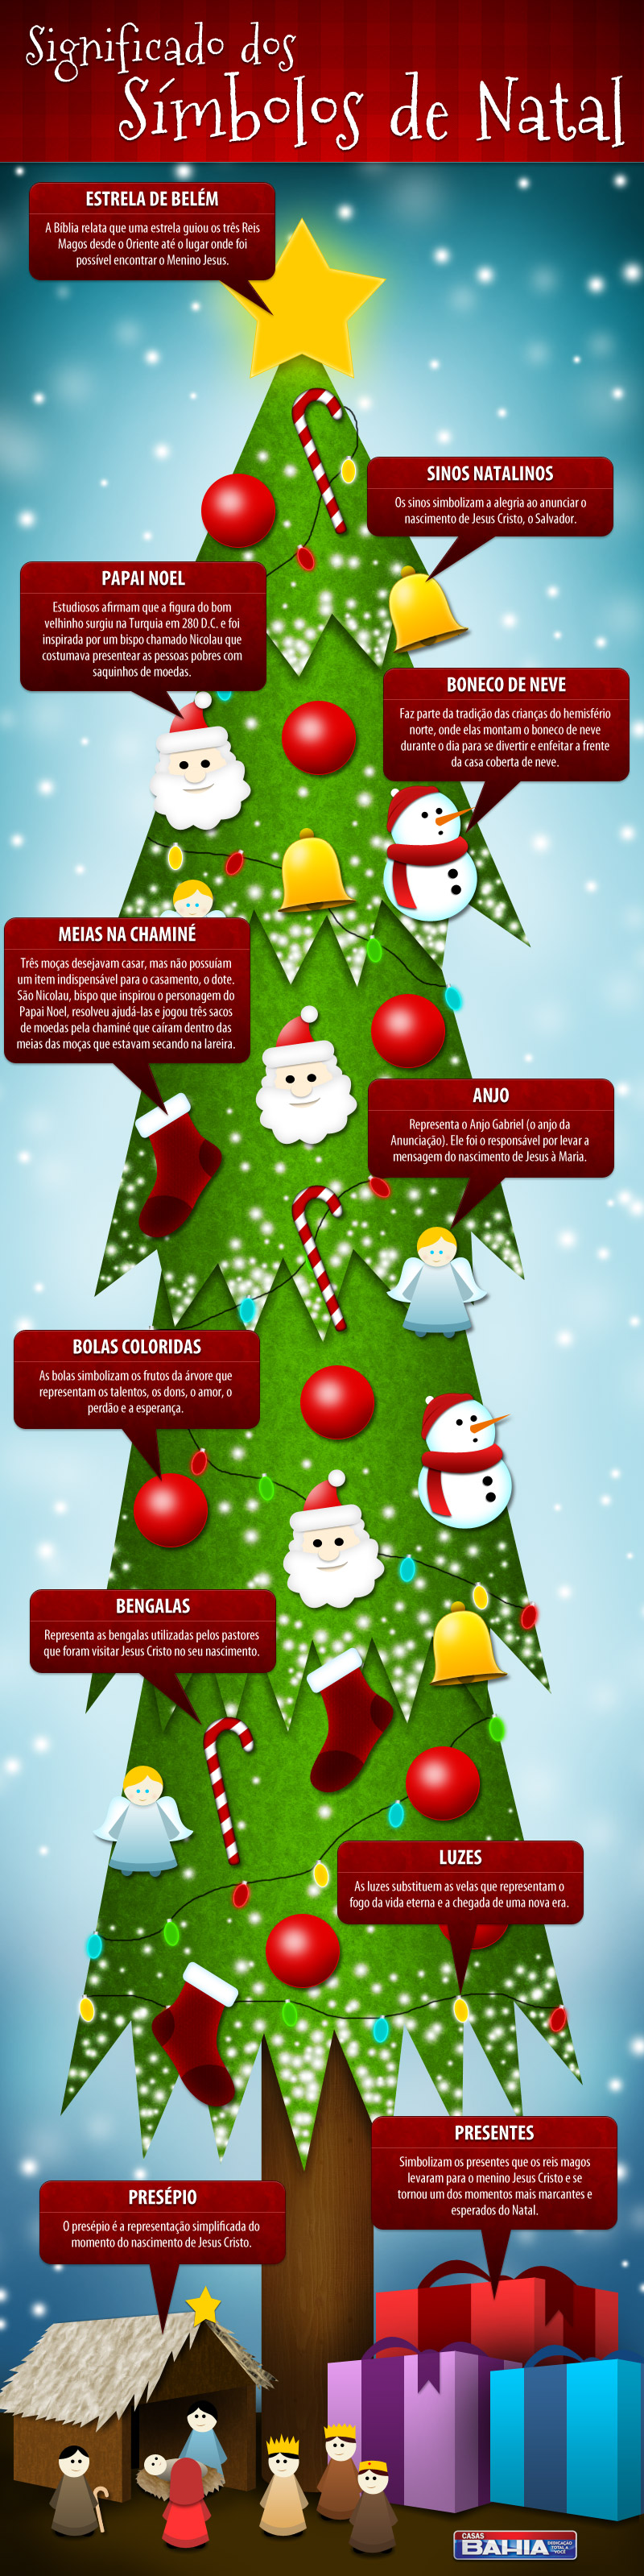 História do Natal: origem, significado e símbolos - Toda Matéria